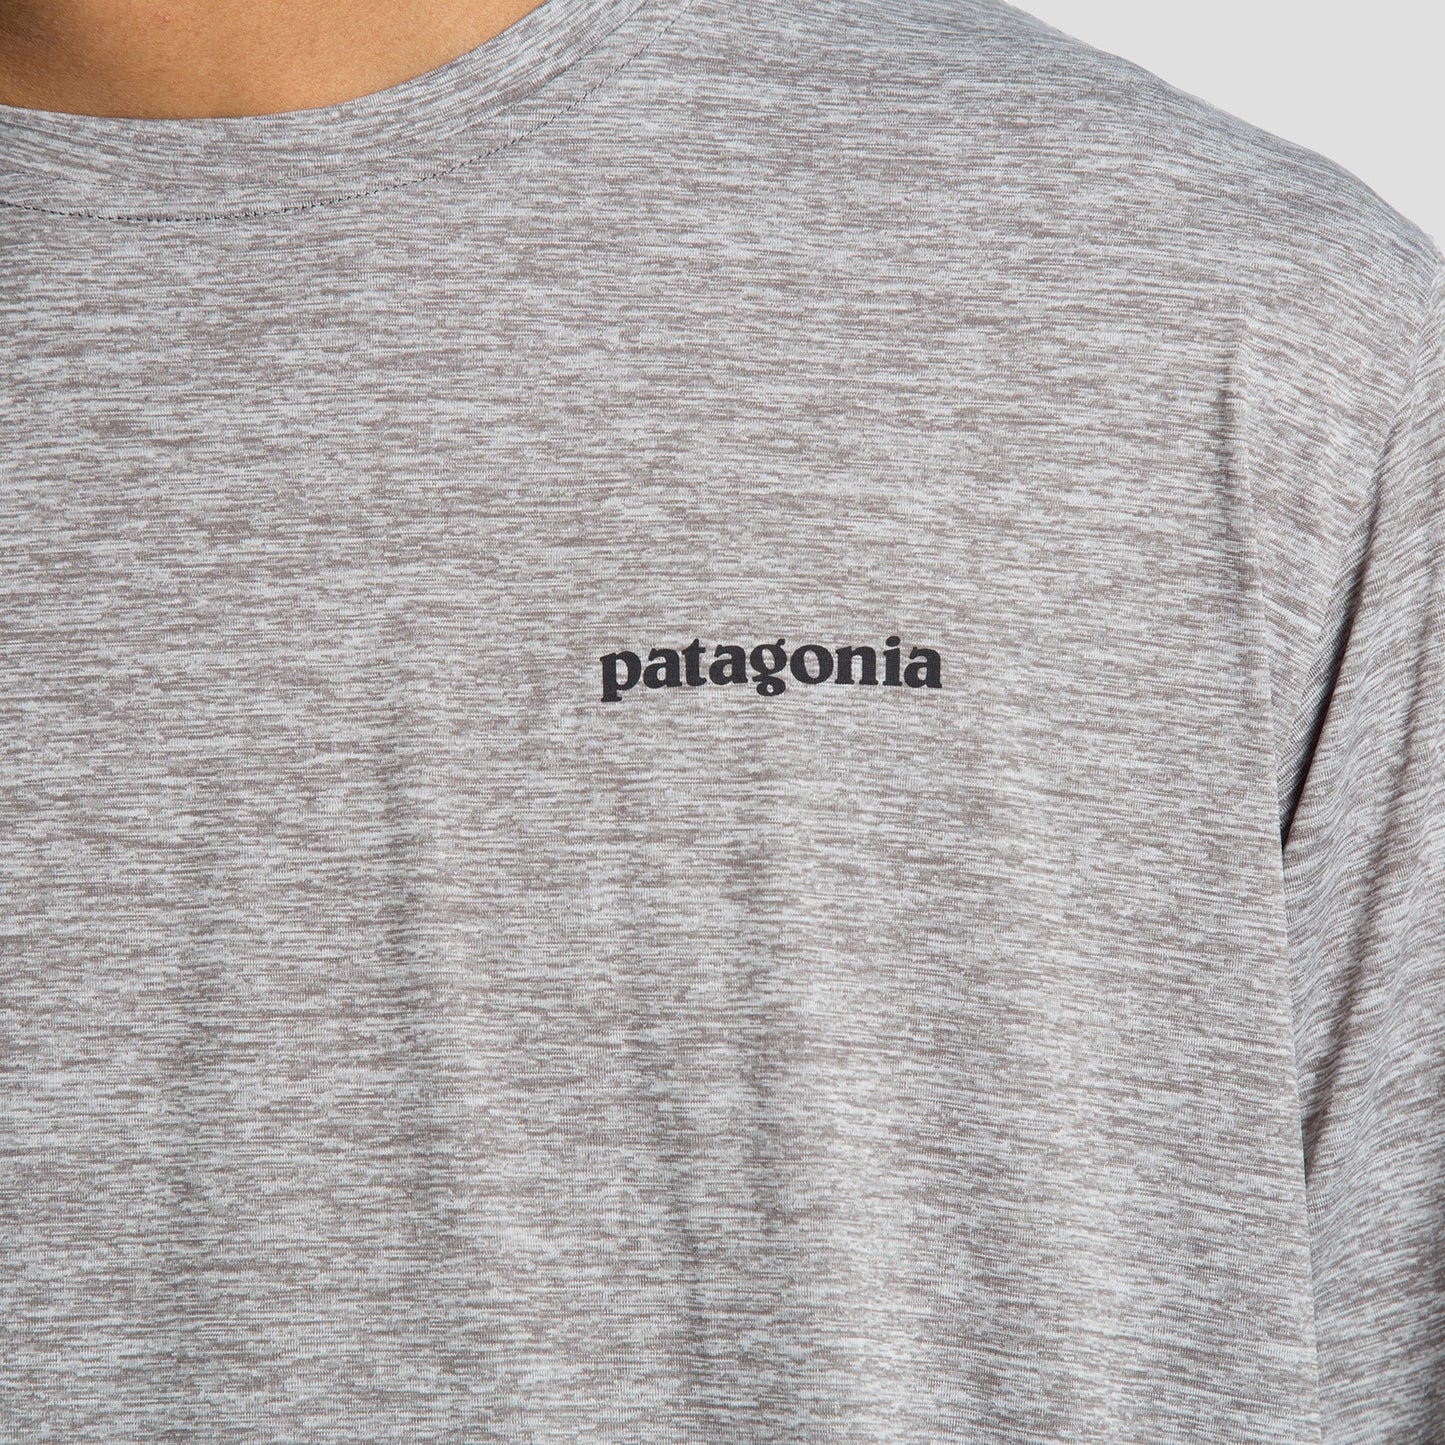 Patagonia Camiseta P-6 Logo - 45235PLFE - Colección Chico